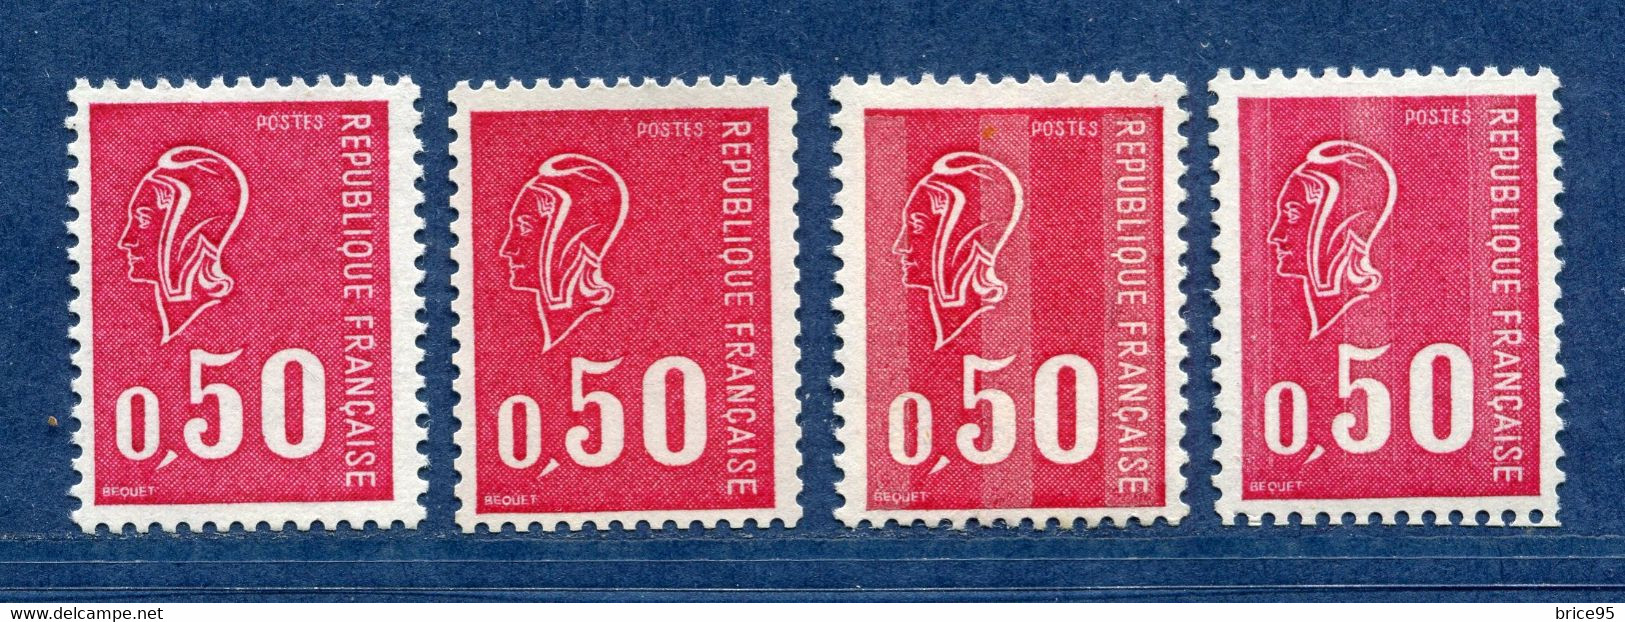 ⭐ France - Variété - YT N° 1664 B - Numéro Rouge - Couleurs - Pétouilles - Neuf Sans Charnière - 1971 ⭐ - Nuovi